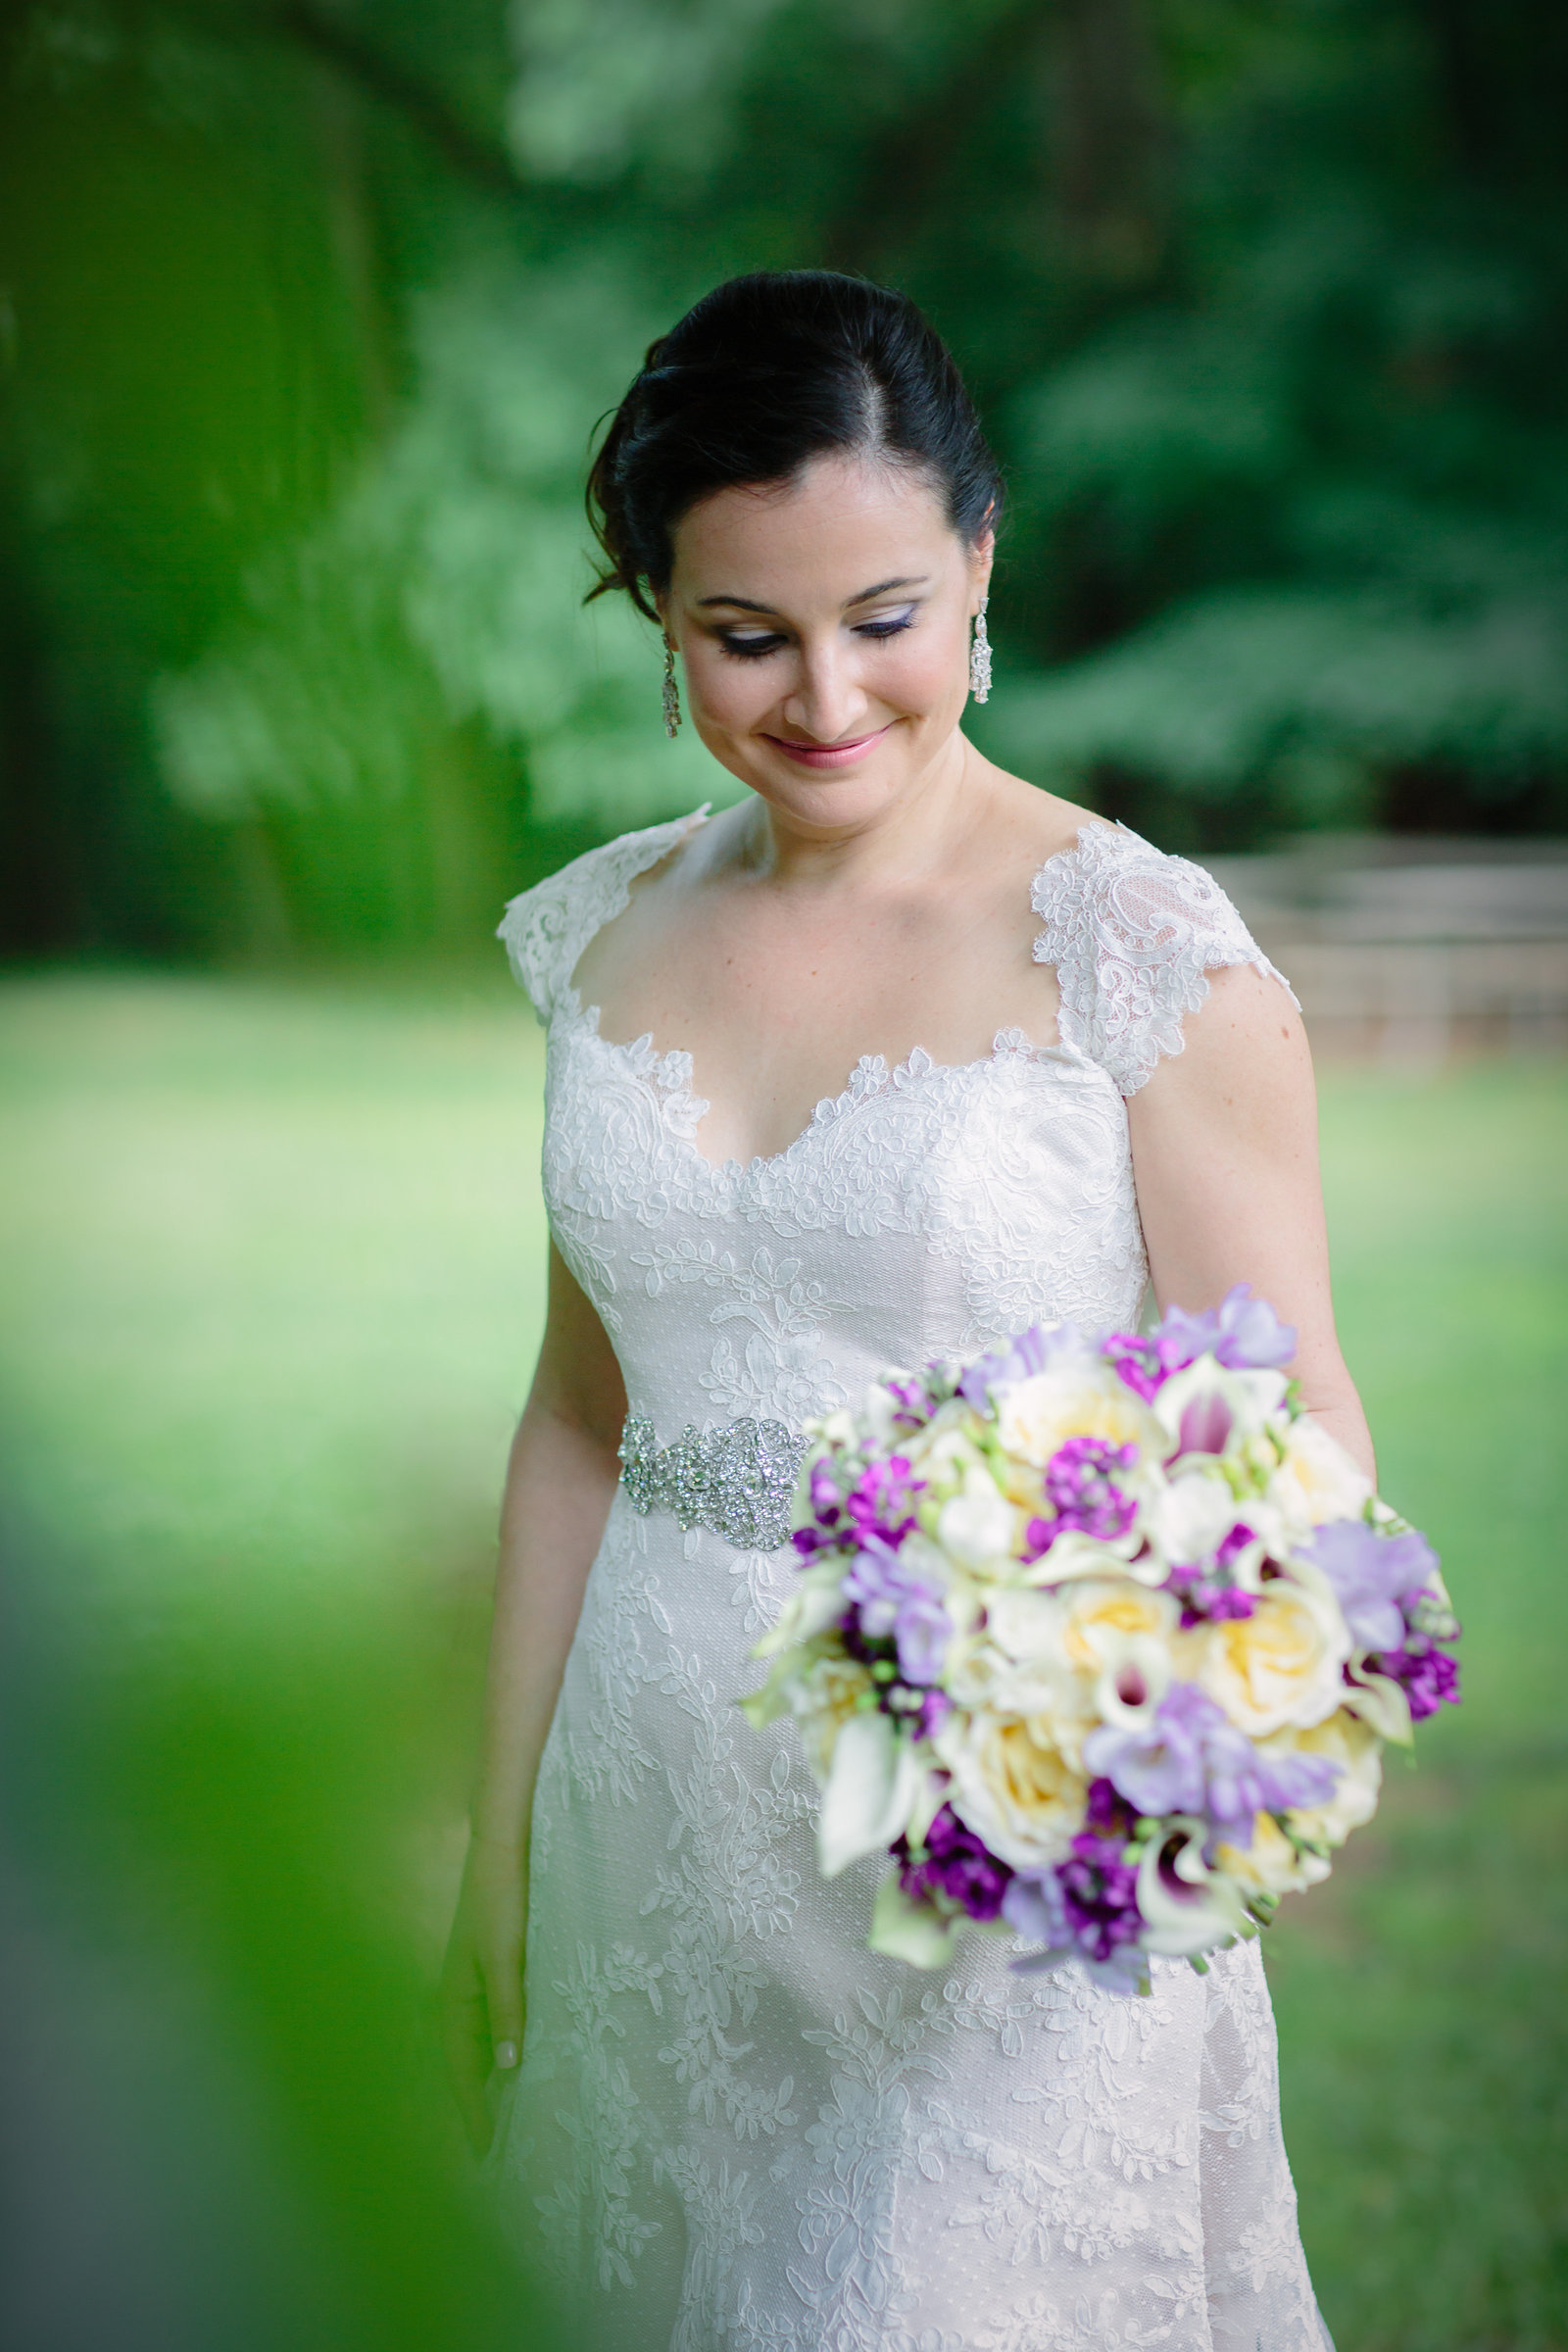 Lace Dress with purple flowers bride portrait